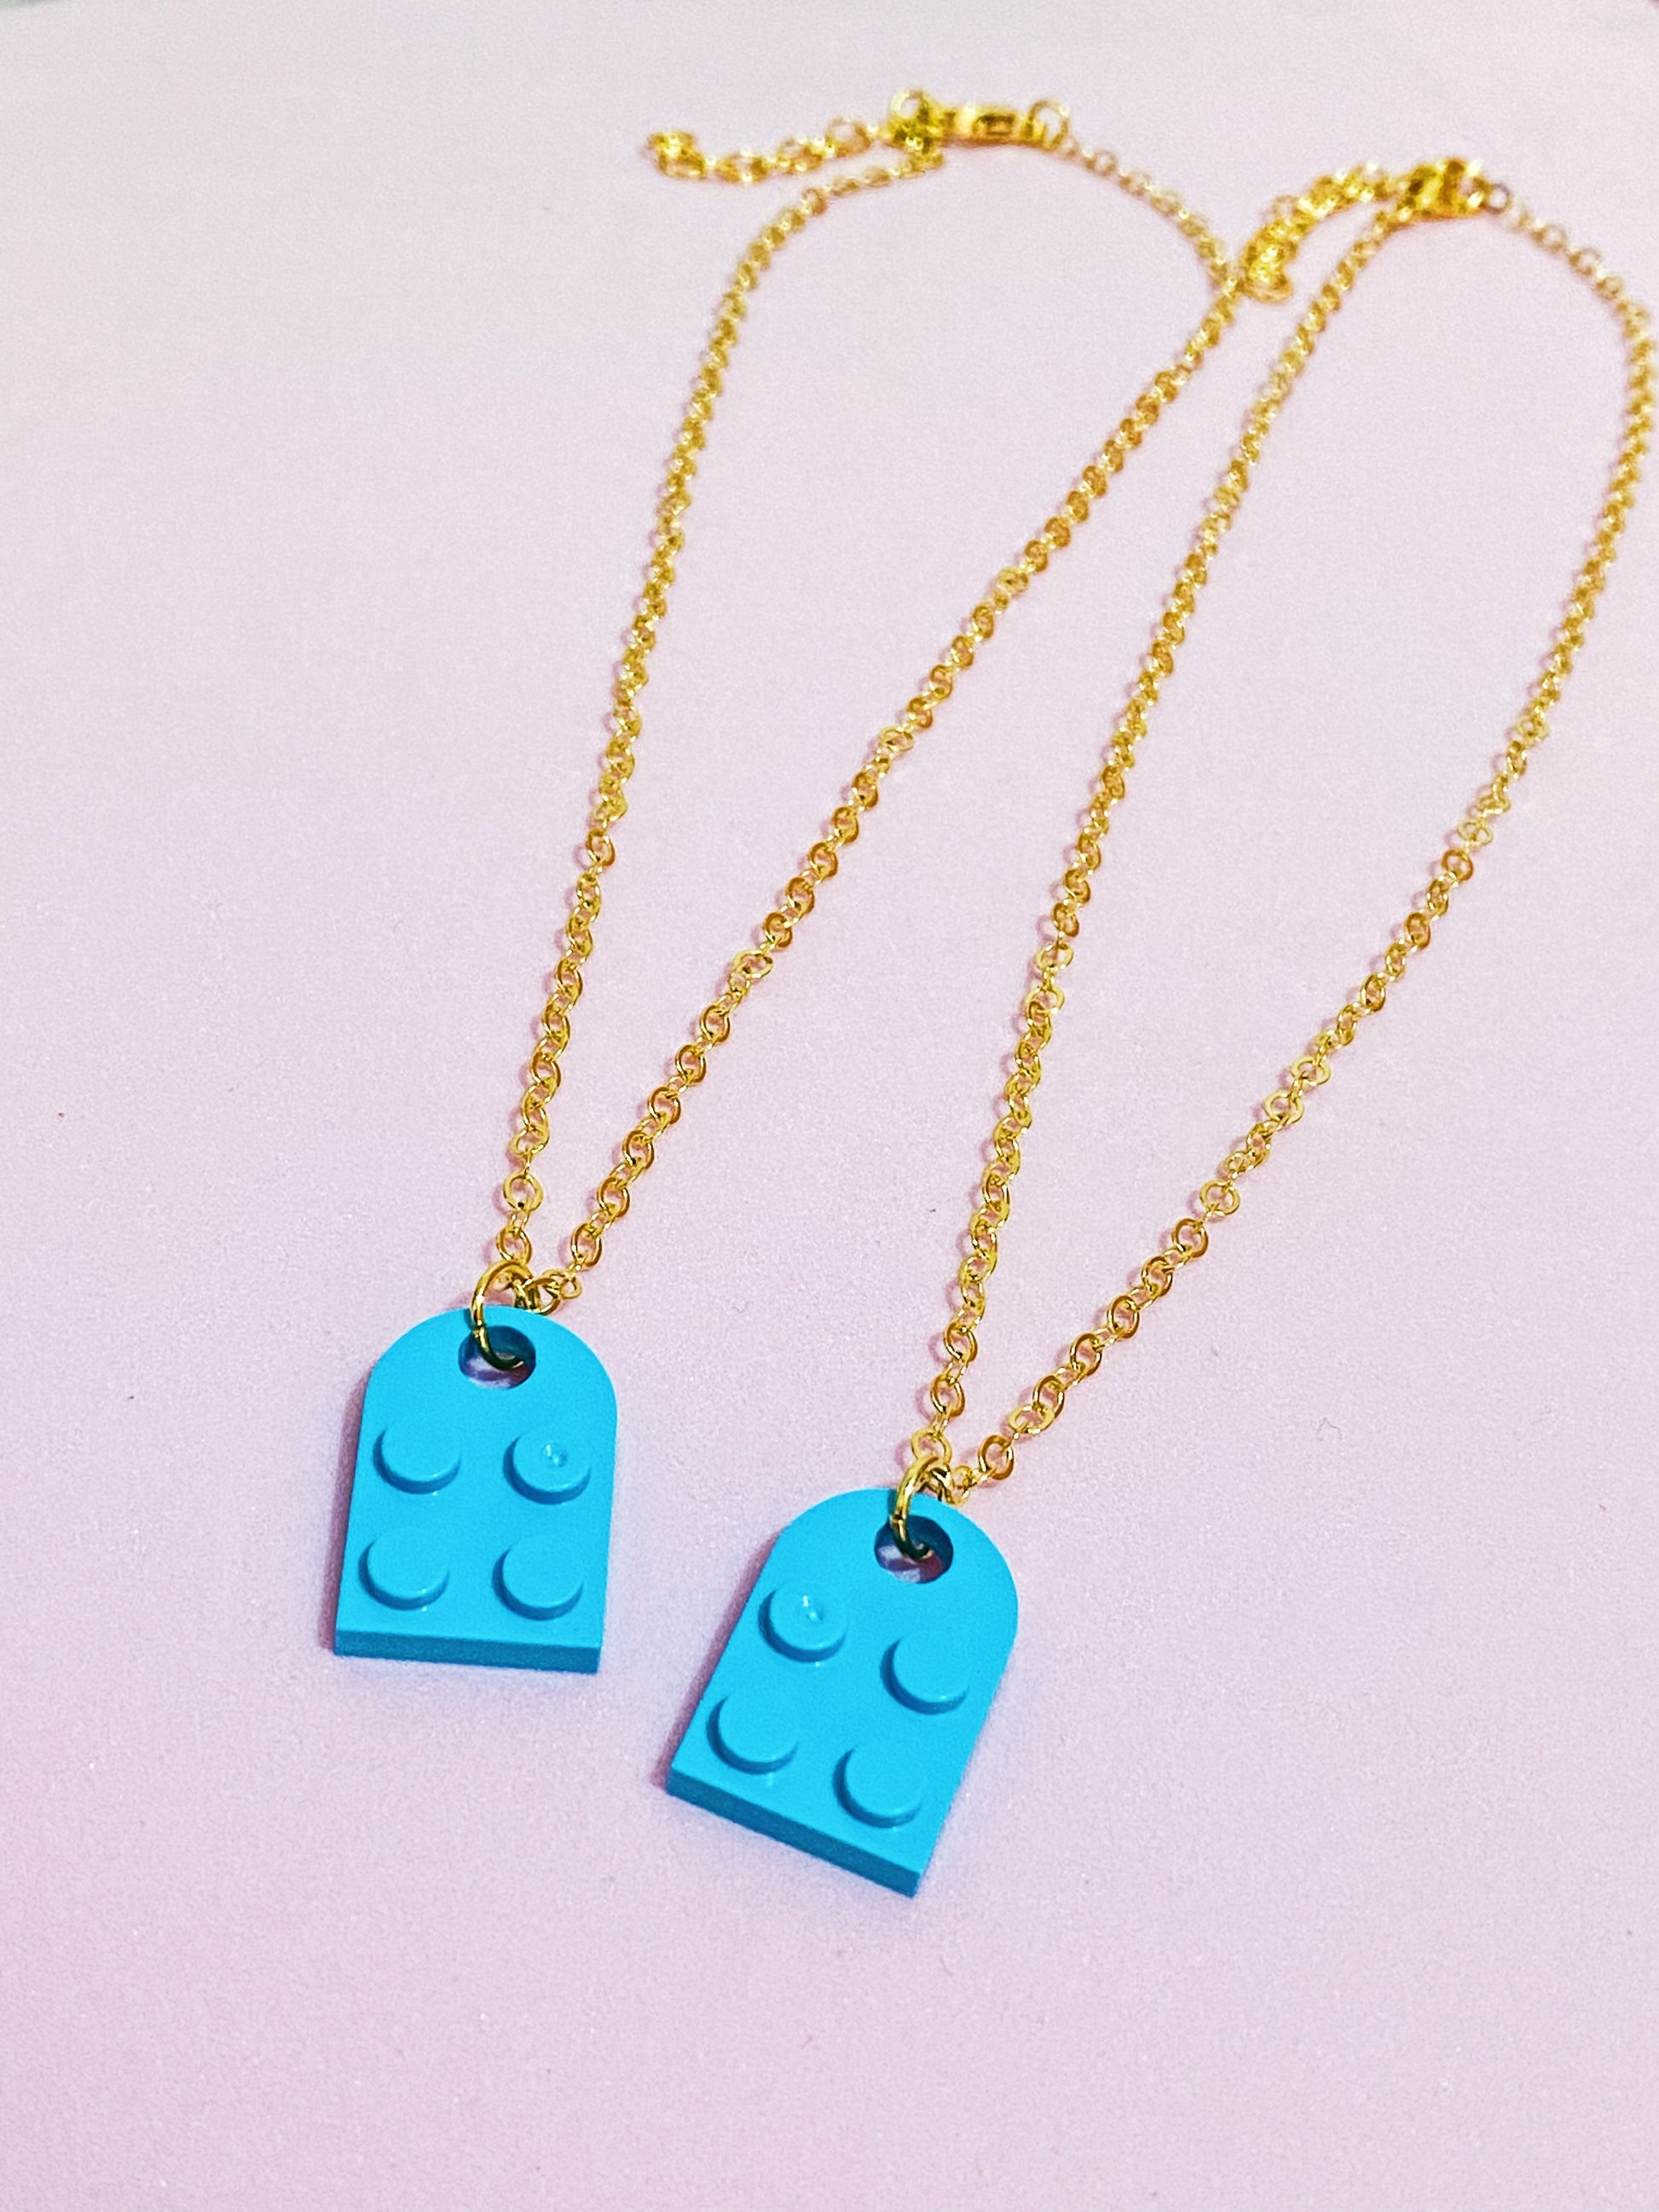 Best Friends Blue Lego Necklaces - ROCKmint